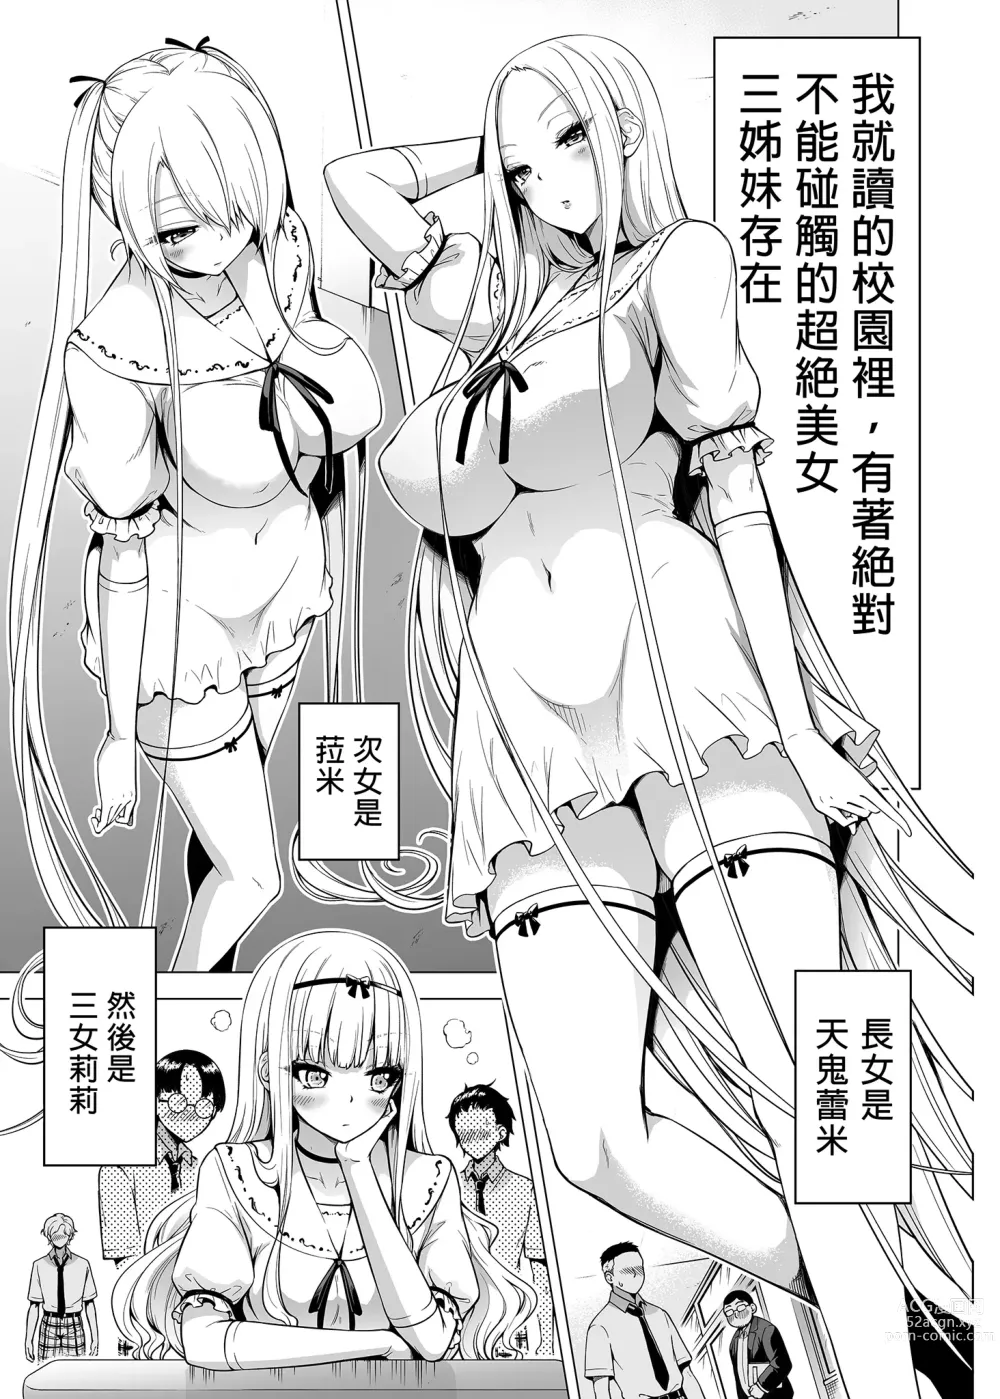 Page 2 of doujinshi 三姐妹1-2 七夏1-6 无马